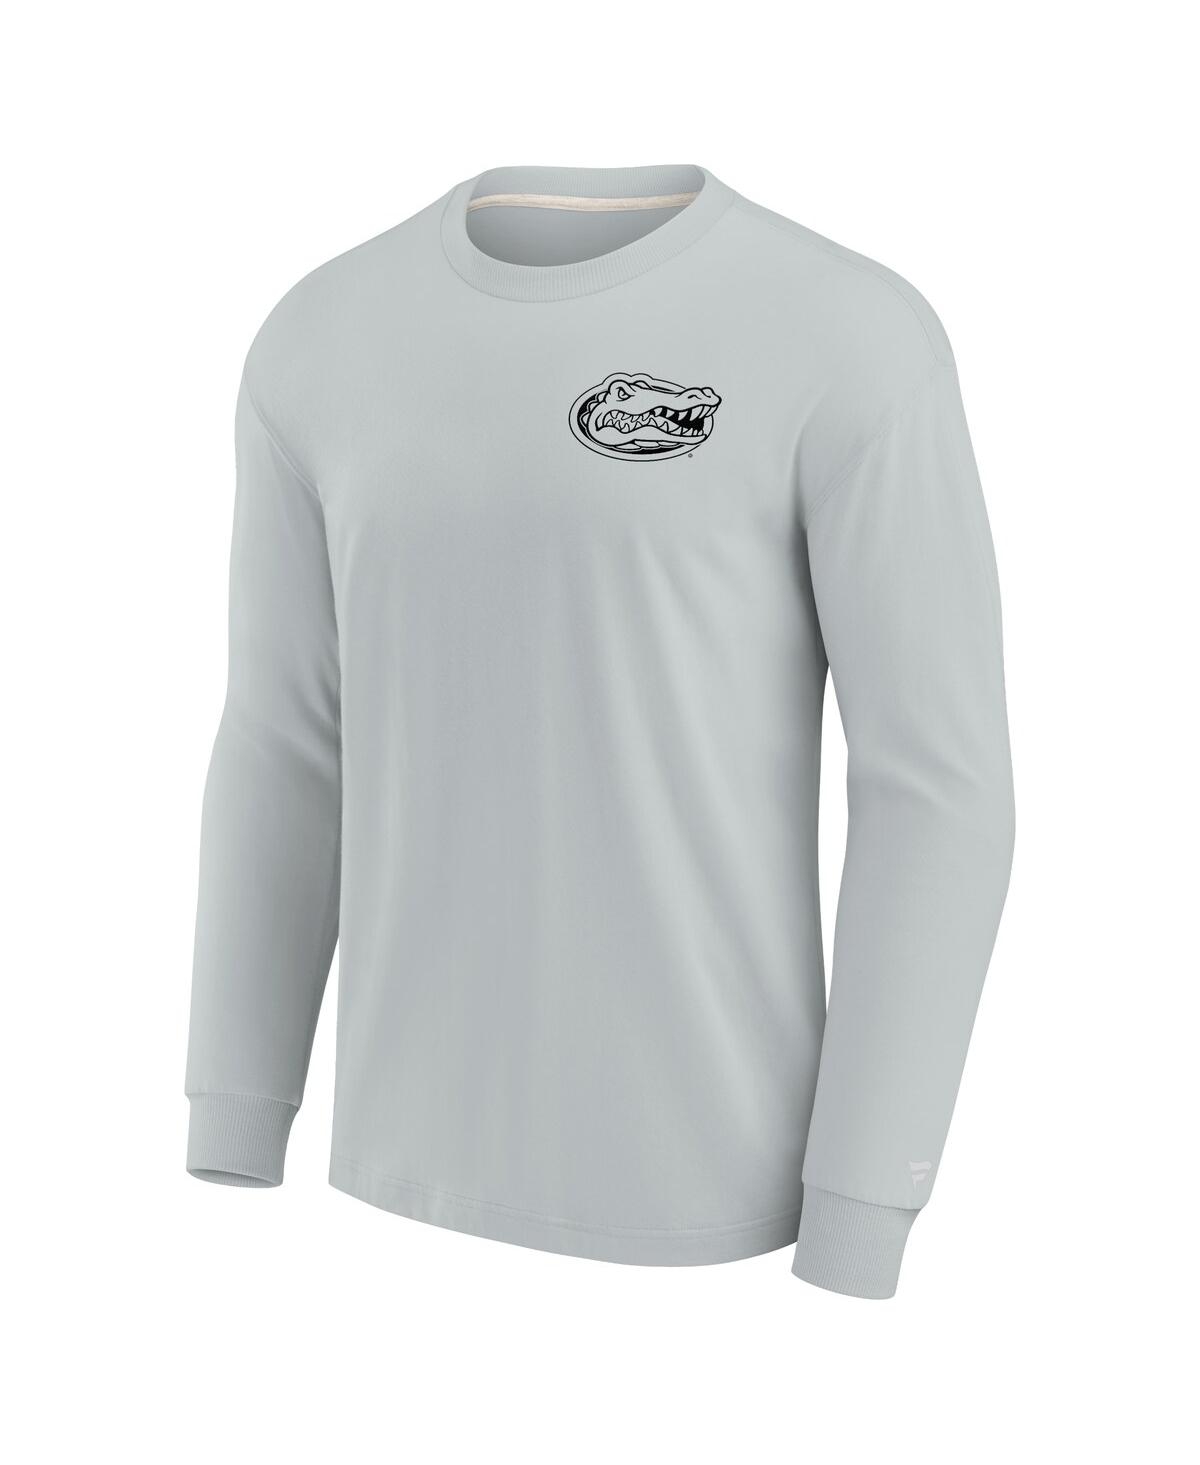 Shop Fanatics Signature Men's And Women's  Gray Florida Gators Super Soft Long Sleeve T-shirt